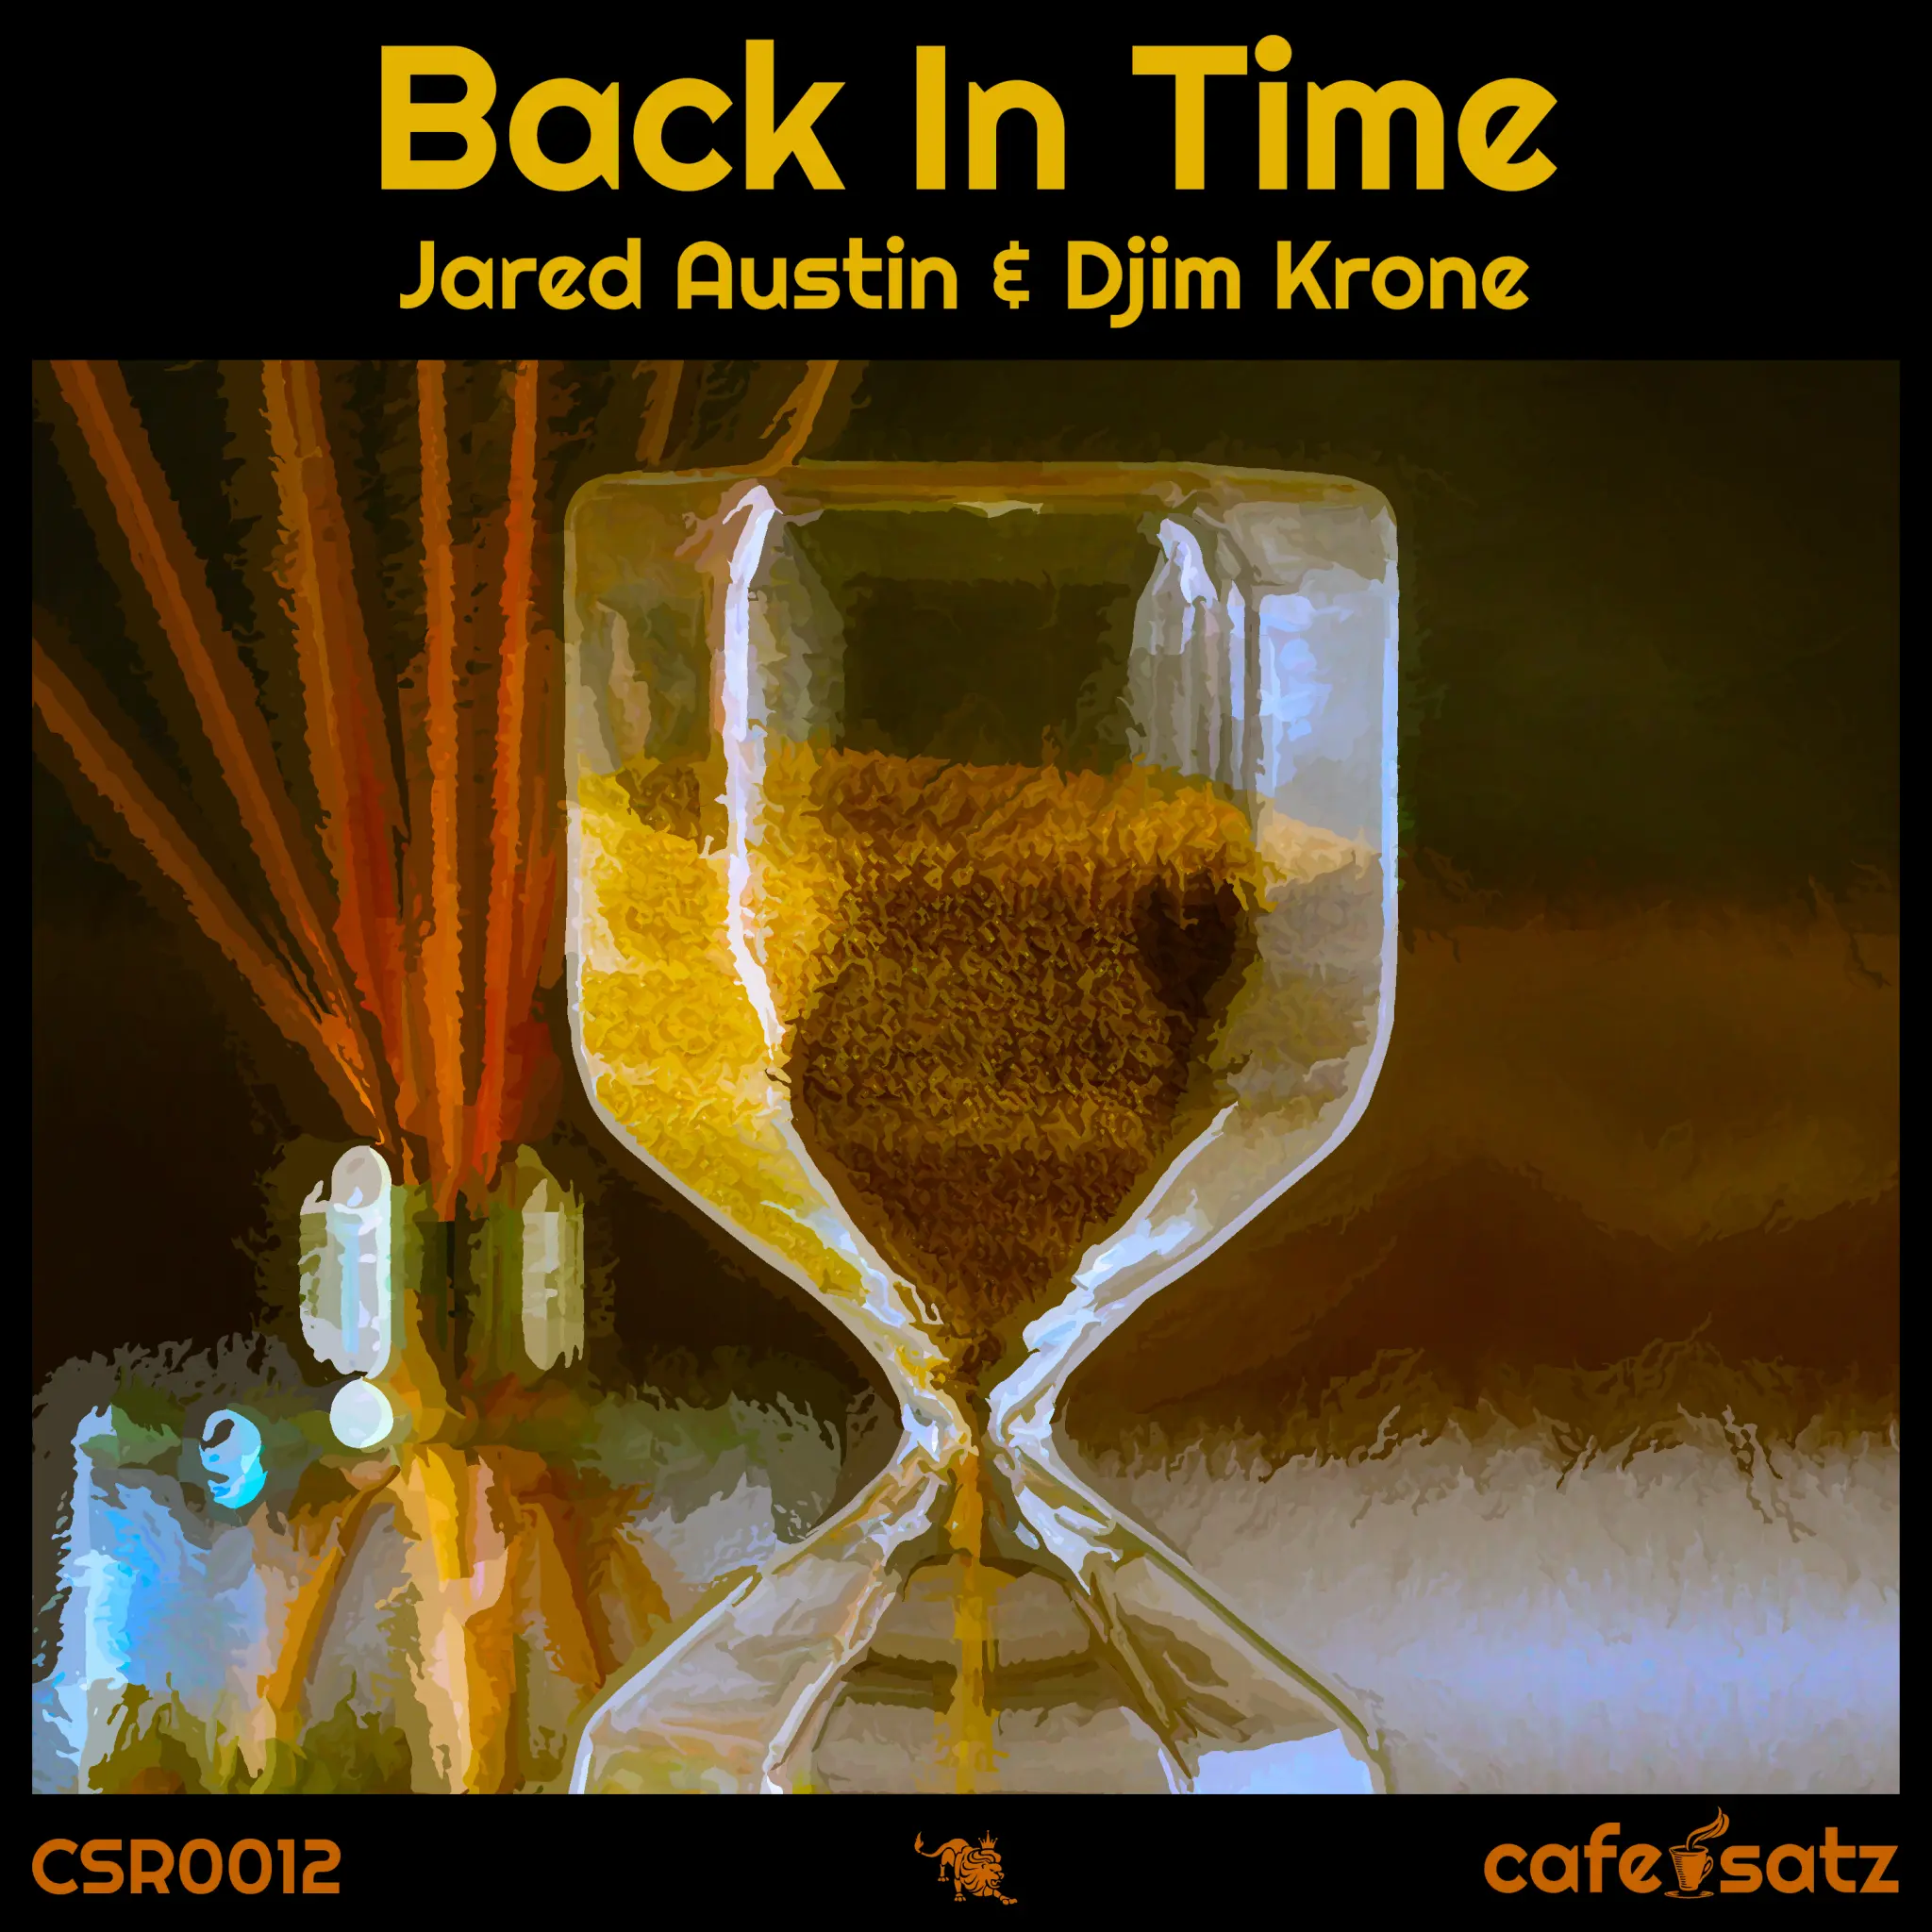 Jared Austin & Djim Krone - Back In Time